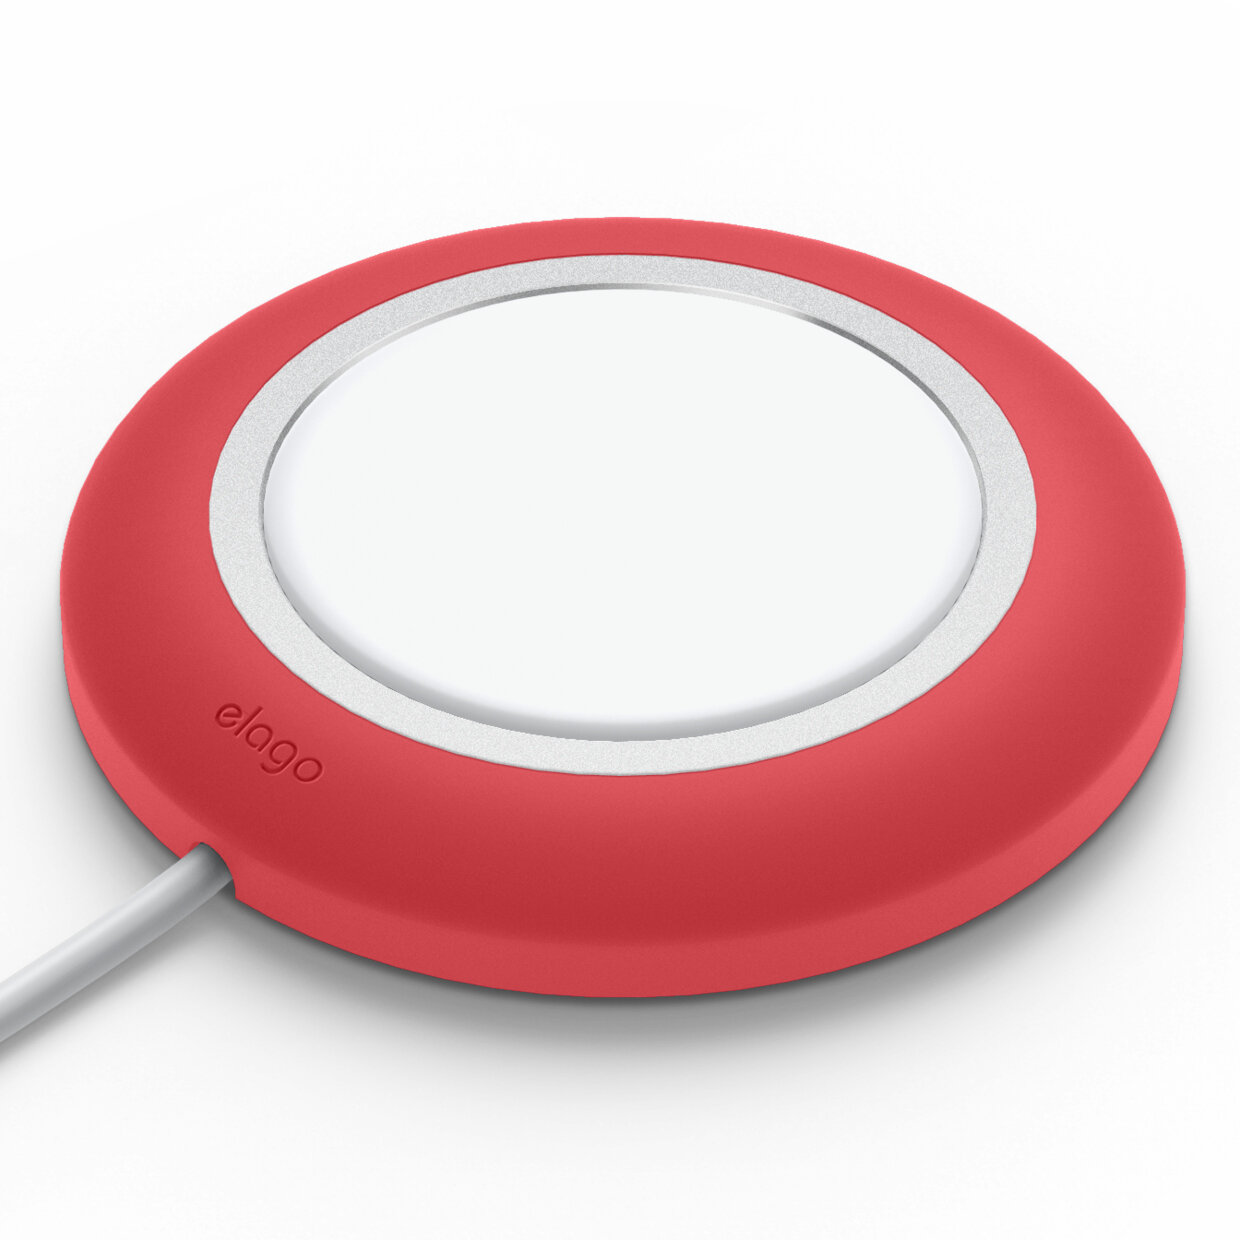 Rojo Mini y Otros teléfonos de Carga inalámbrica elago MS Charging Pad Compatible con MagSafe Cargador Compatible con iPhone 12 MagSafe No Incluido Pro Pro MAX